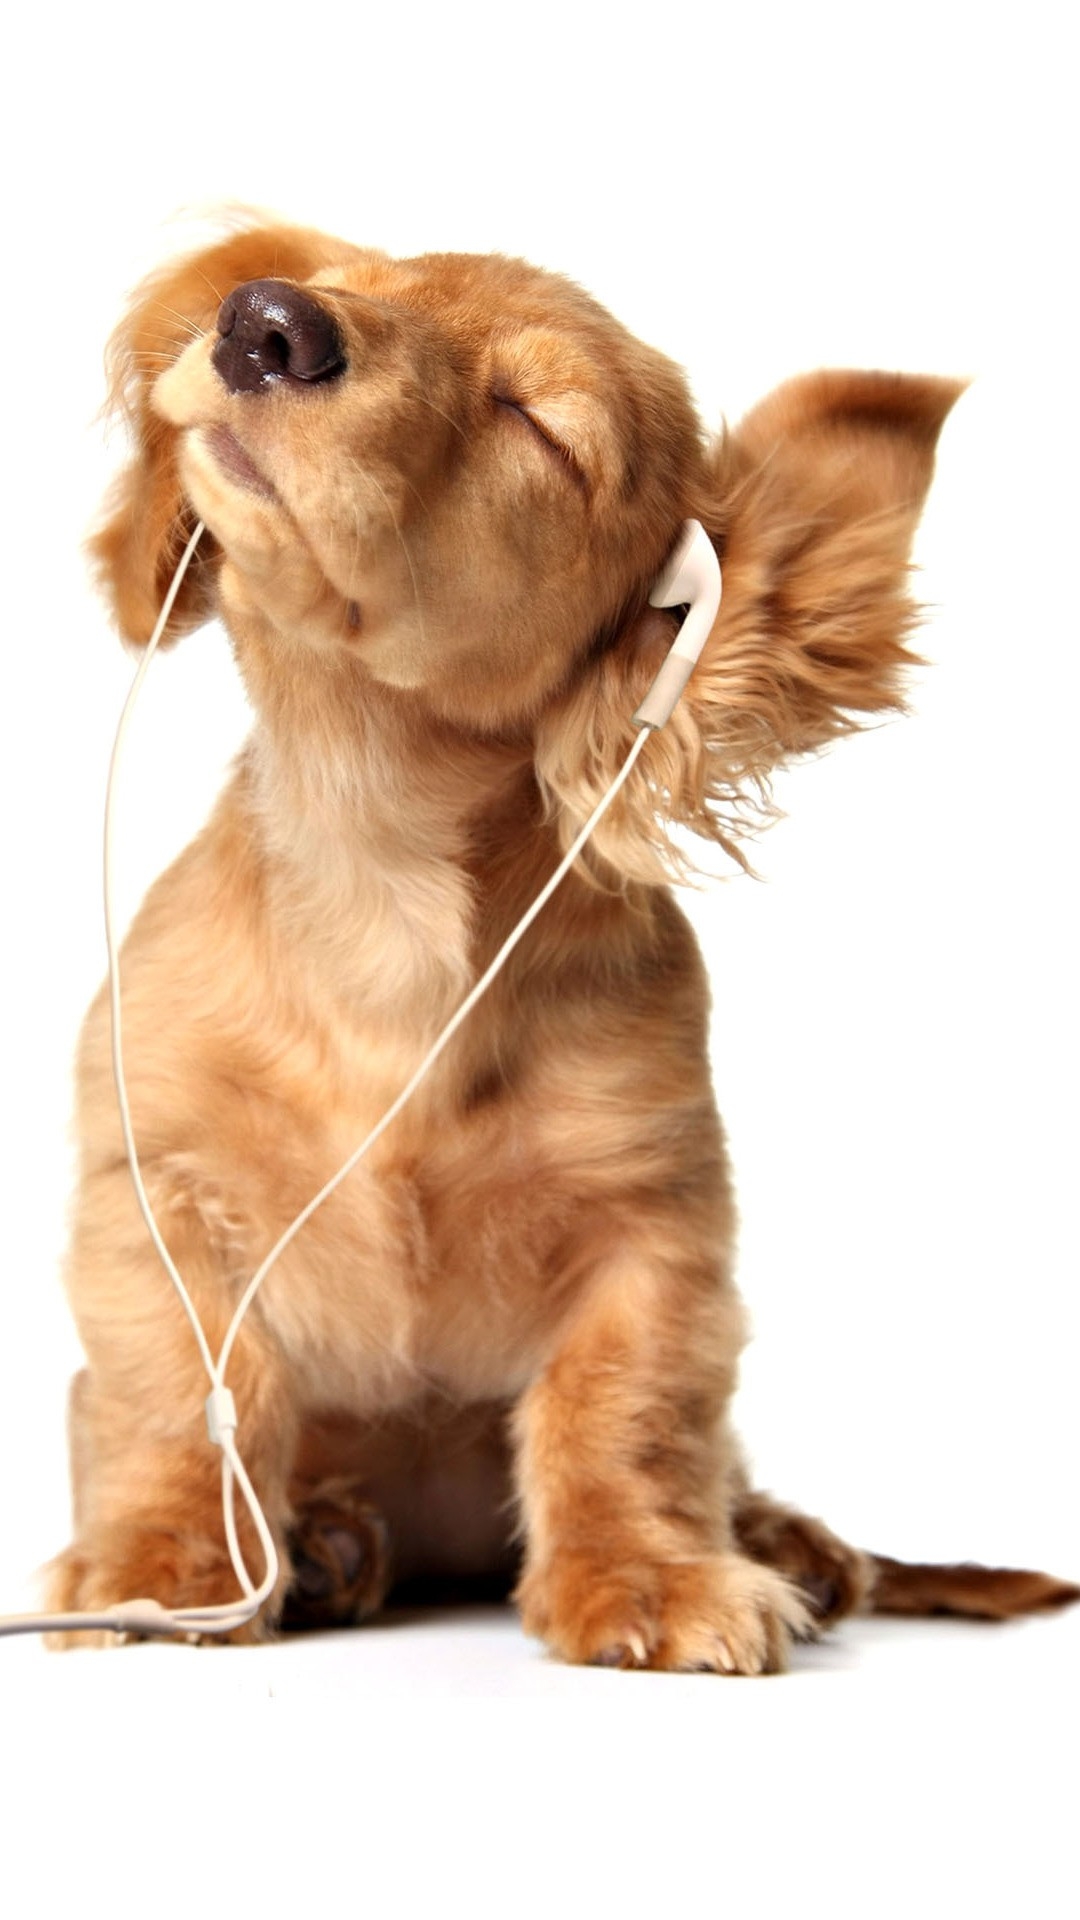 音楽を聞く犬 Iphone Wallpapers